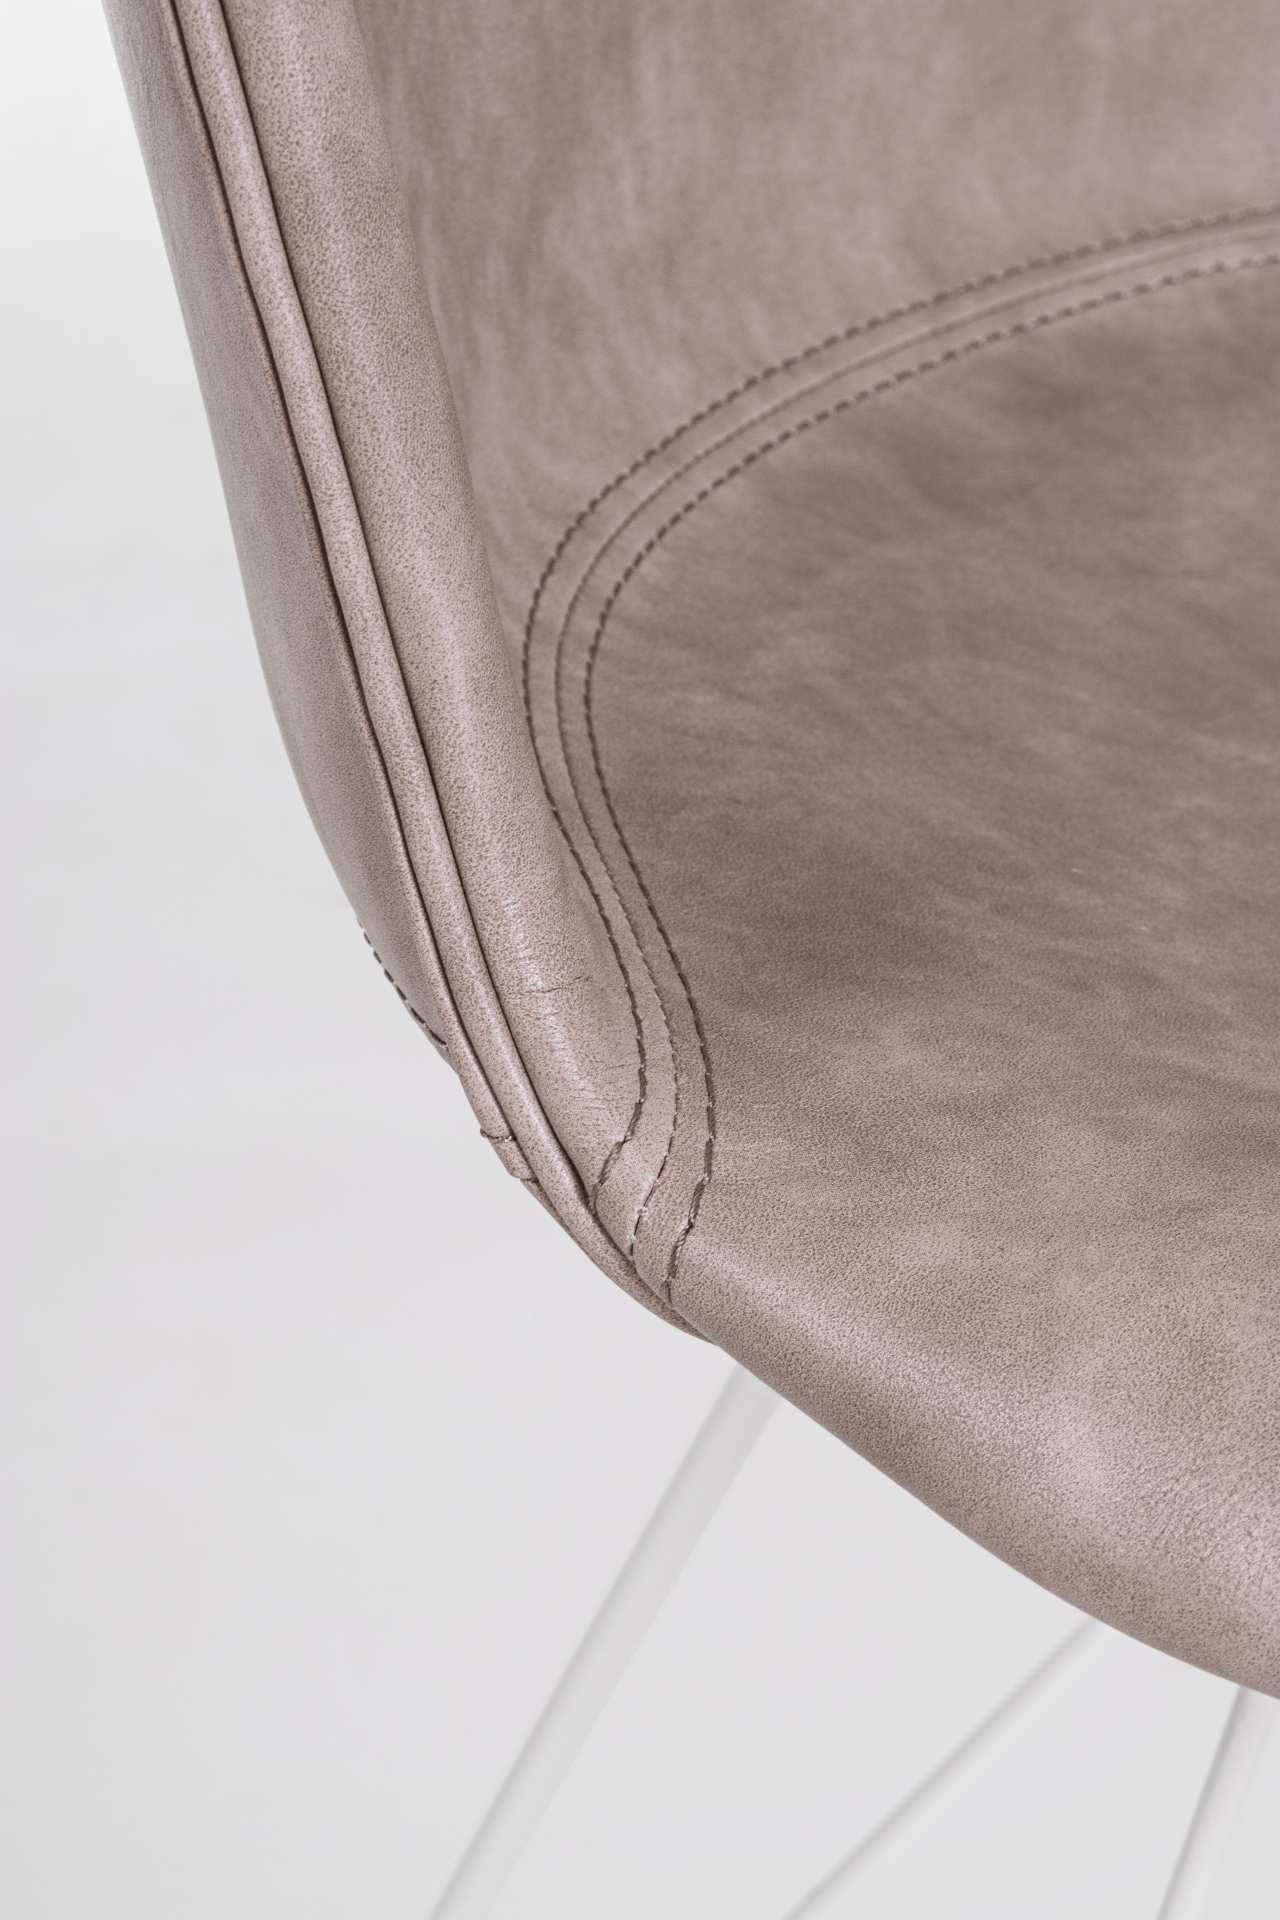 Der Esszimmerstuhl Loft überzeugt mit seinem modernem Design. Gefertigt wurde der Stuhl aus Kunstleder, welches einen Beige Farbton besitzt. Das Gestell ist aus Metall und ist Weiß. Die Sitzhöhe beträgt 45 cm.